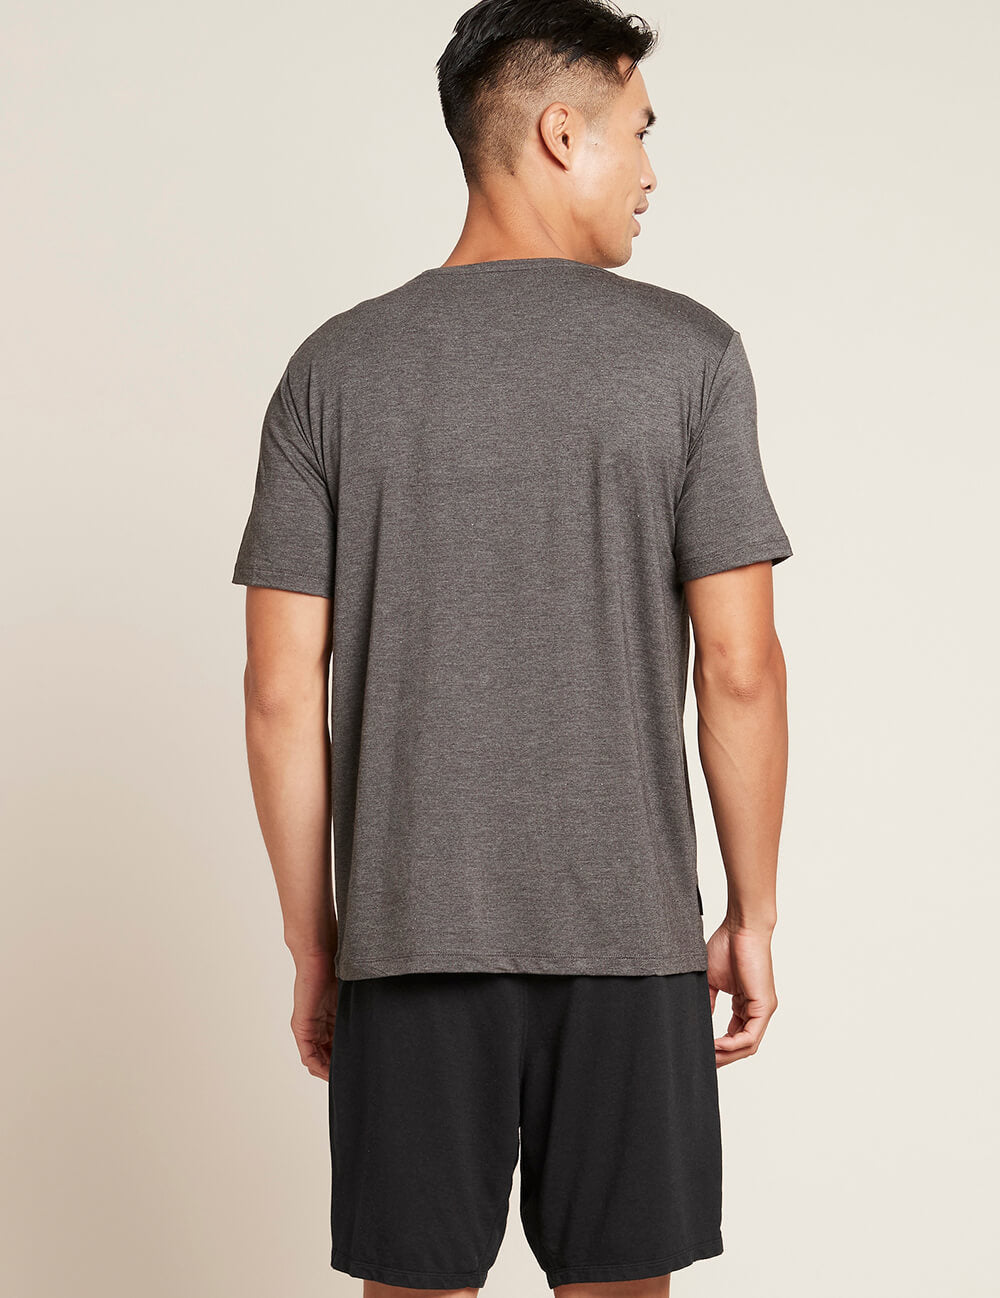 Boody Men's V-Neck T-Shirt in Dark Grey Back